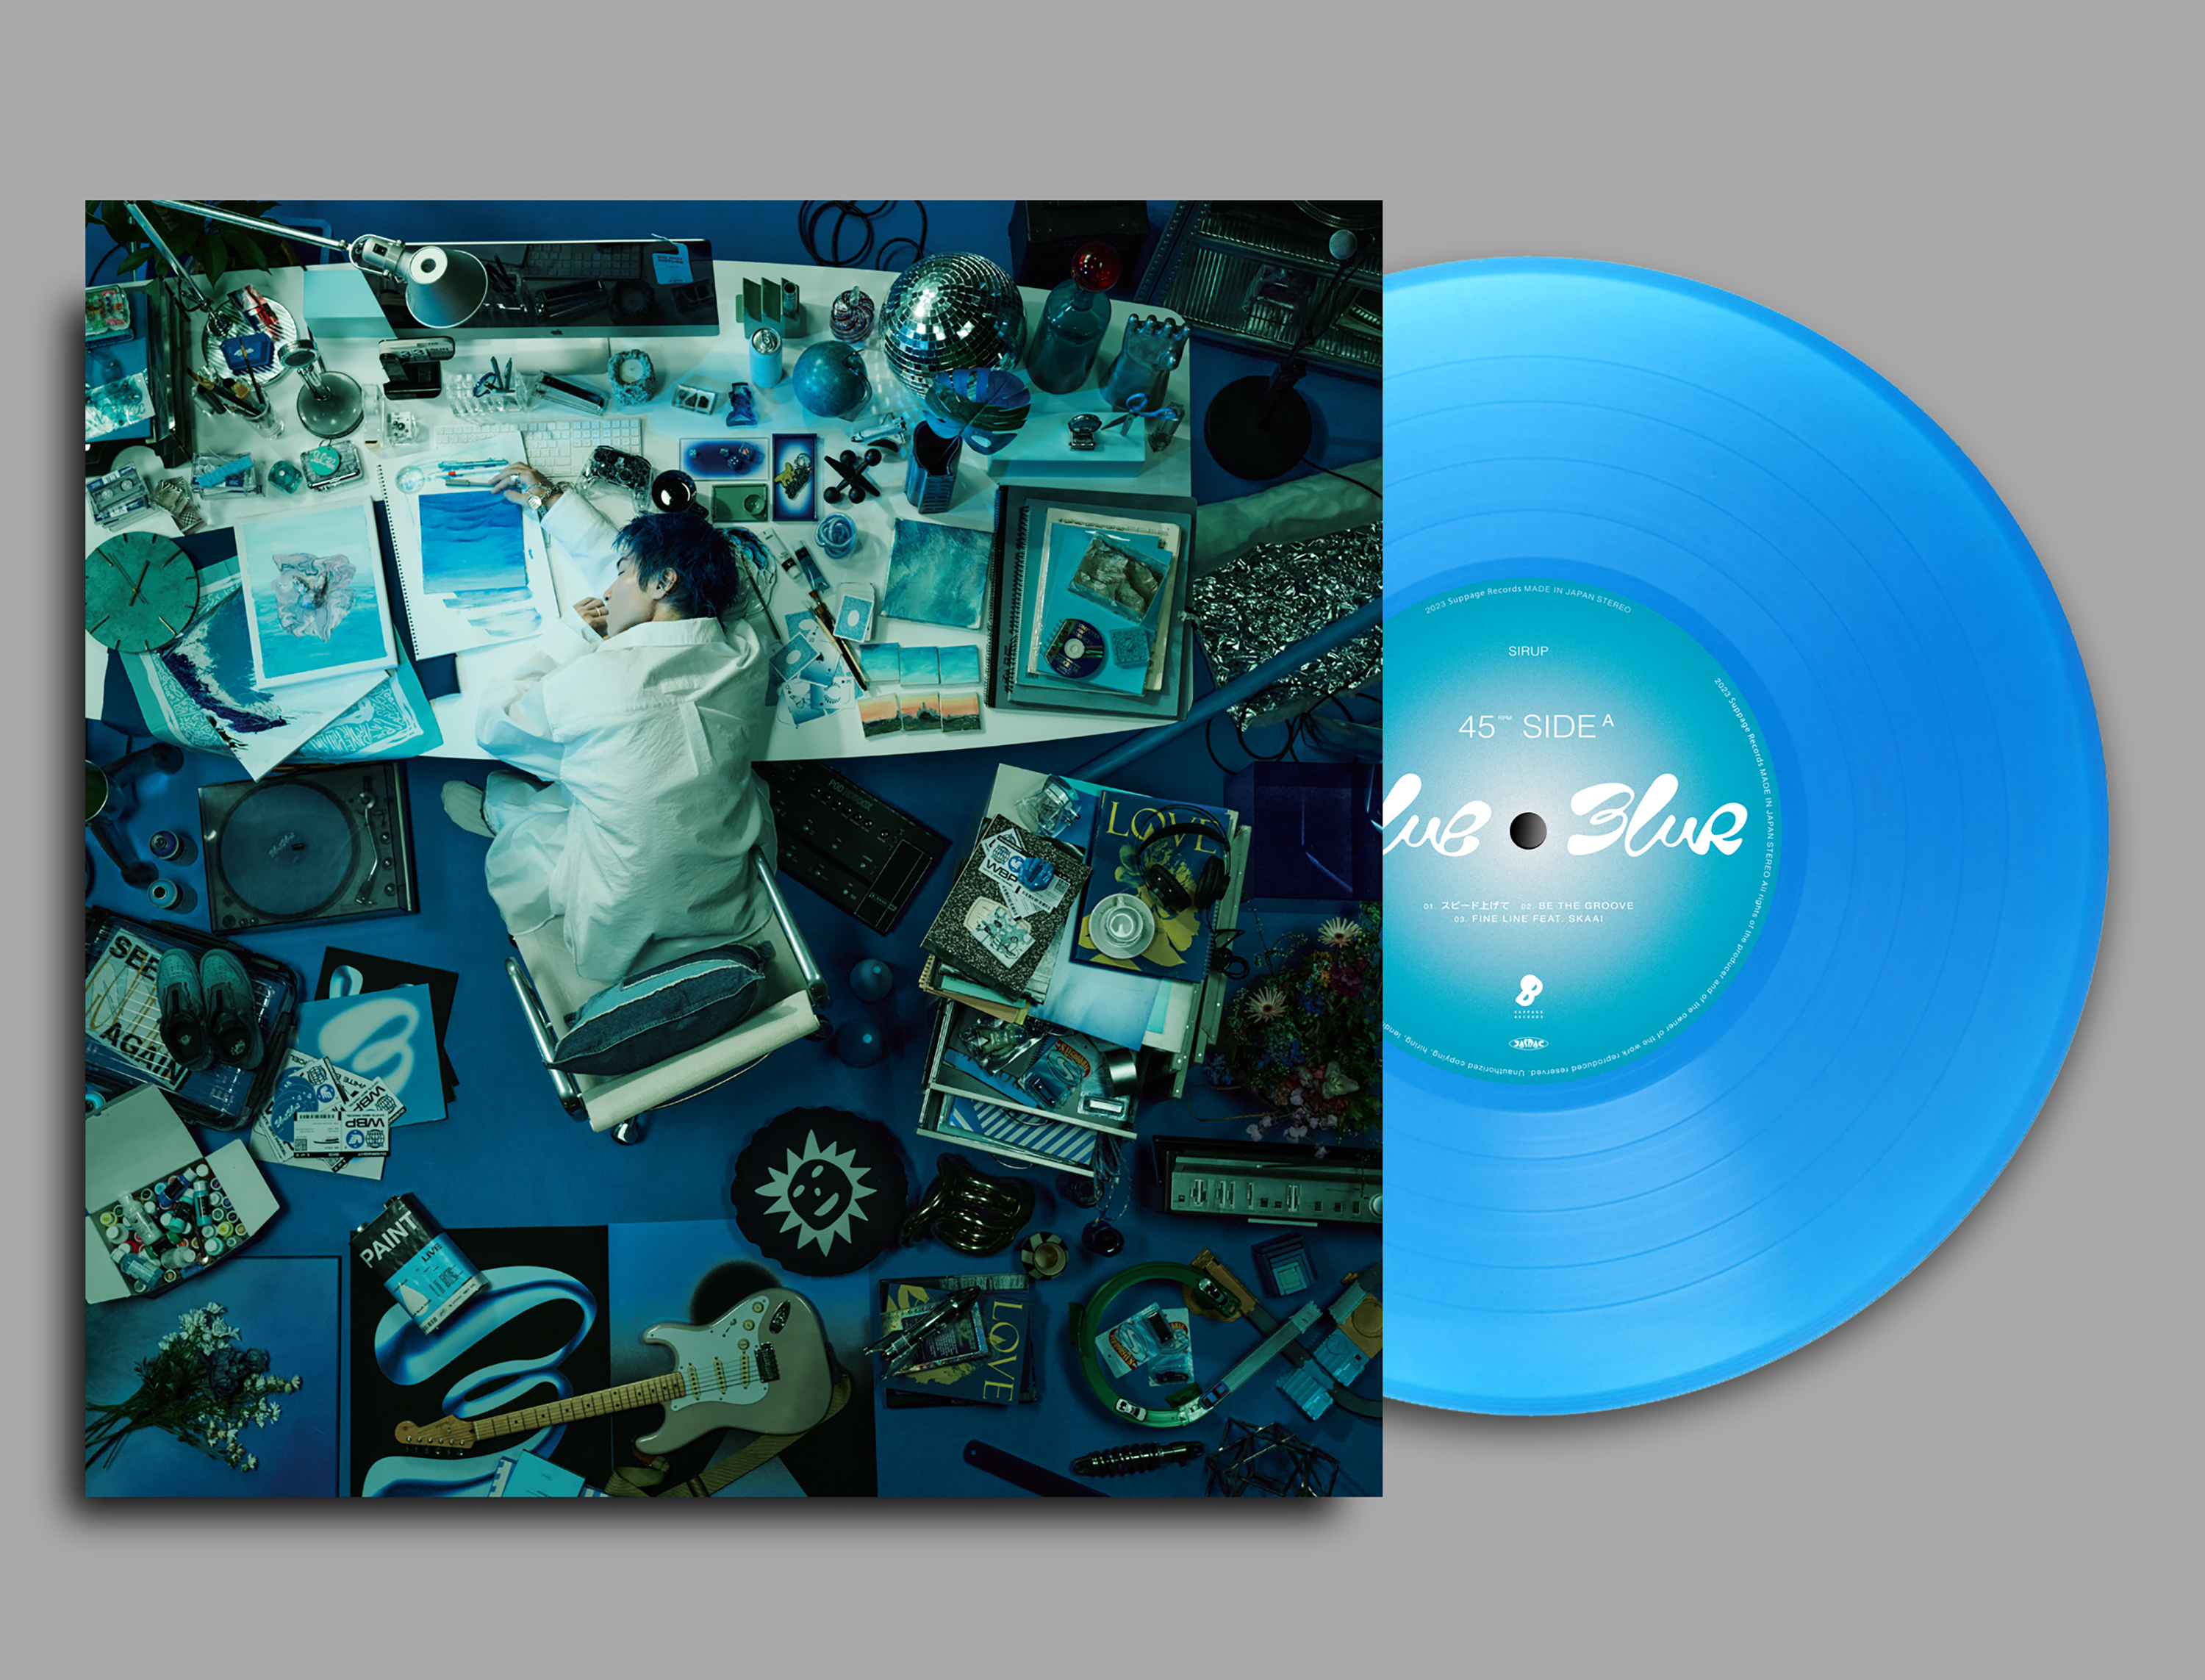 SIRUP 最新EP「BLUE BLUR」の12inchアナログレコードが発売決定